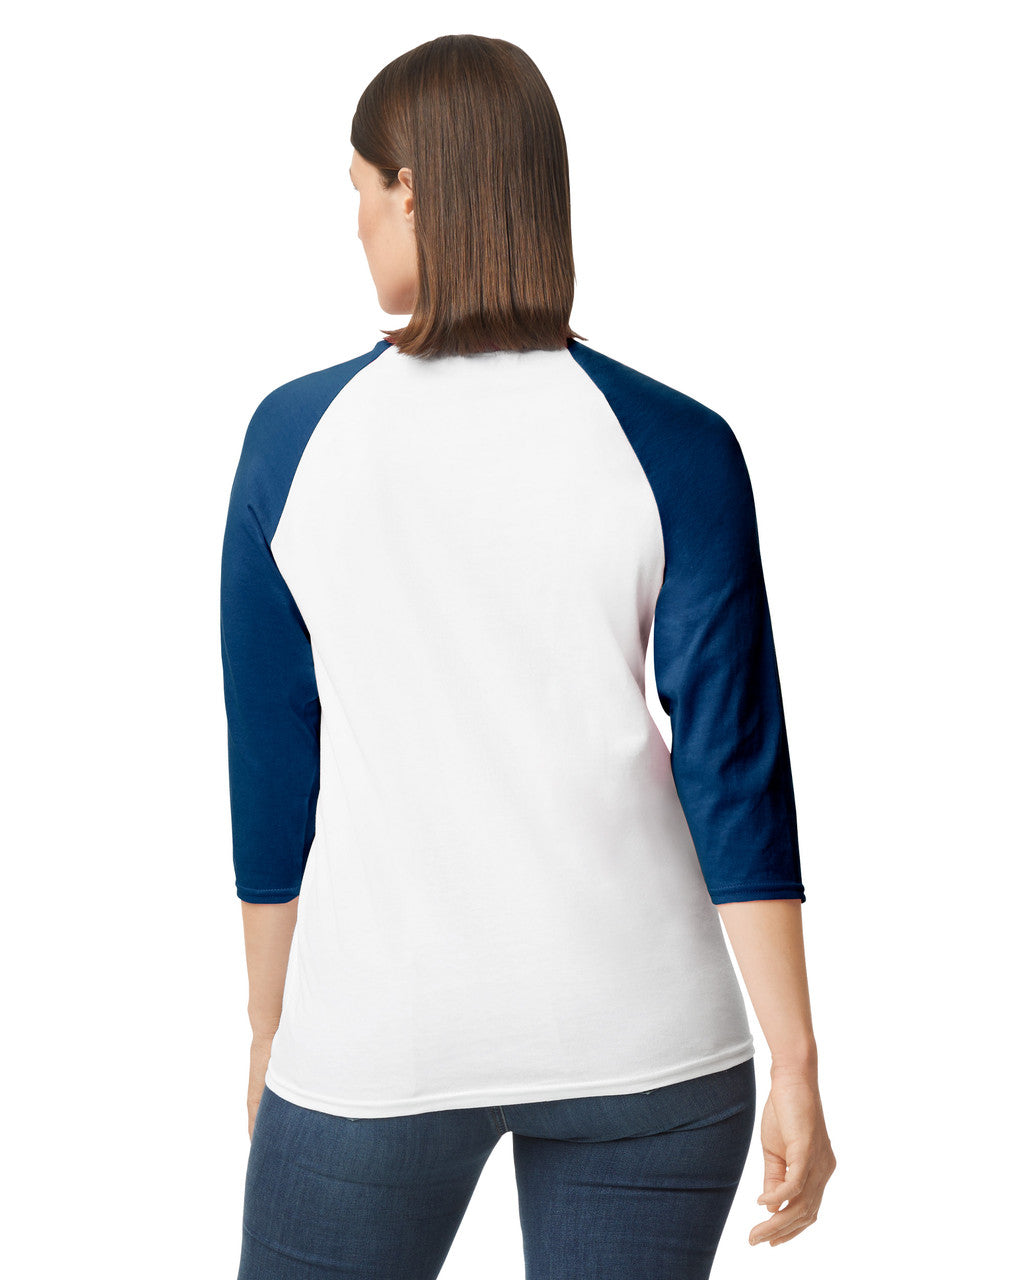 Camiseta raglan 3/4 Blanco manga azul Gildan Ref. 5700